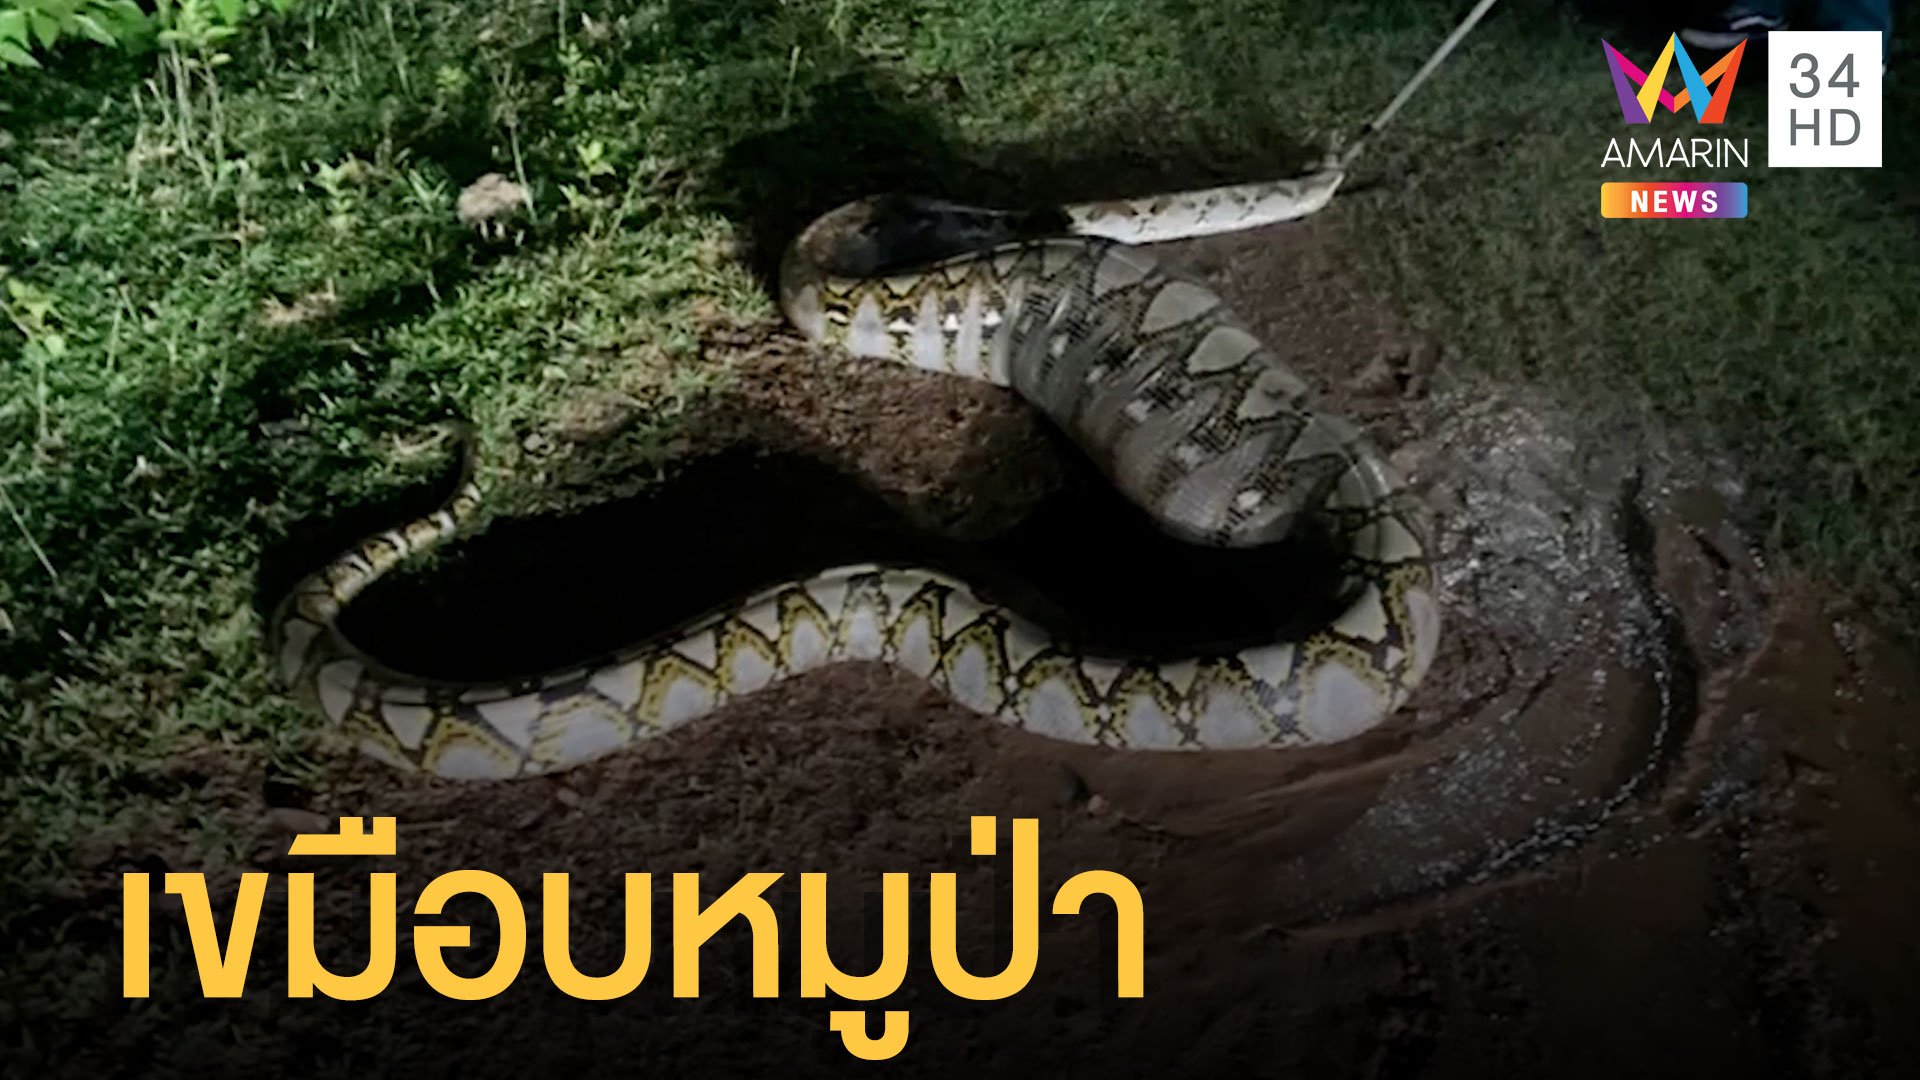 งูเหลือมเขมือบลูกหมูป่า อิ่มมากตัวอ้วนตุ๊บเลื้อยไปต่อไม่ได้ | ข่าวอรุณอมรินทร์ | 9 พ.ค. 65 | AMARIN TVHD34